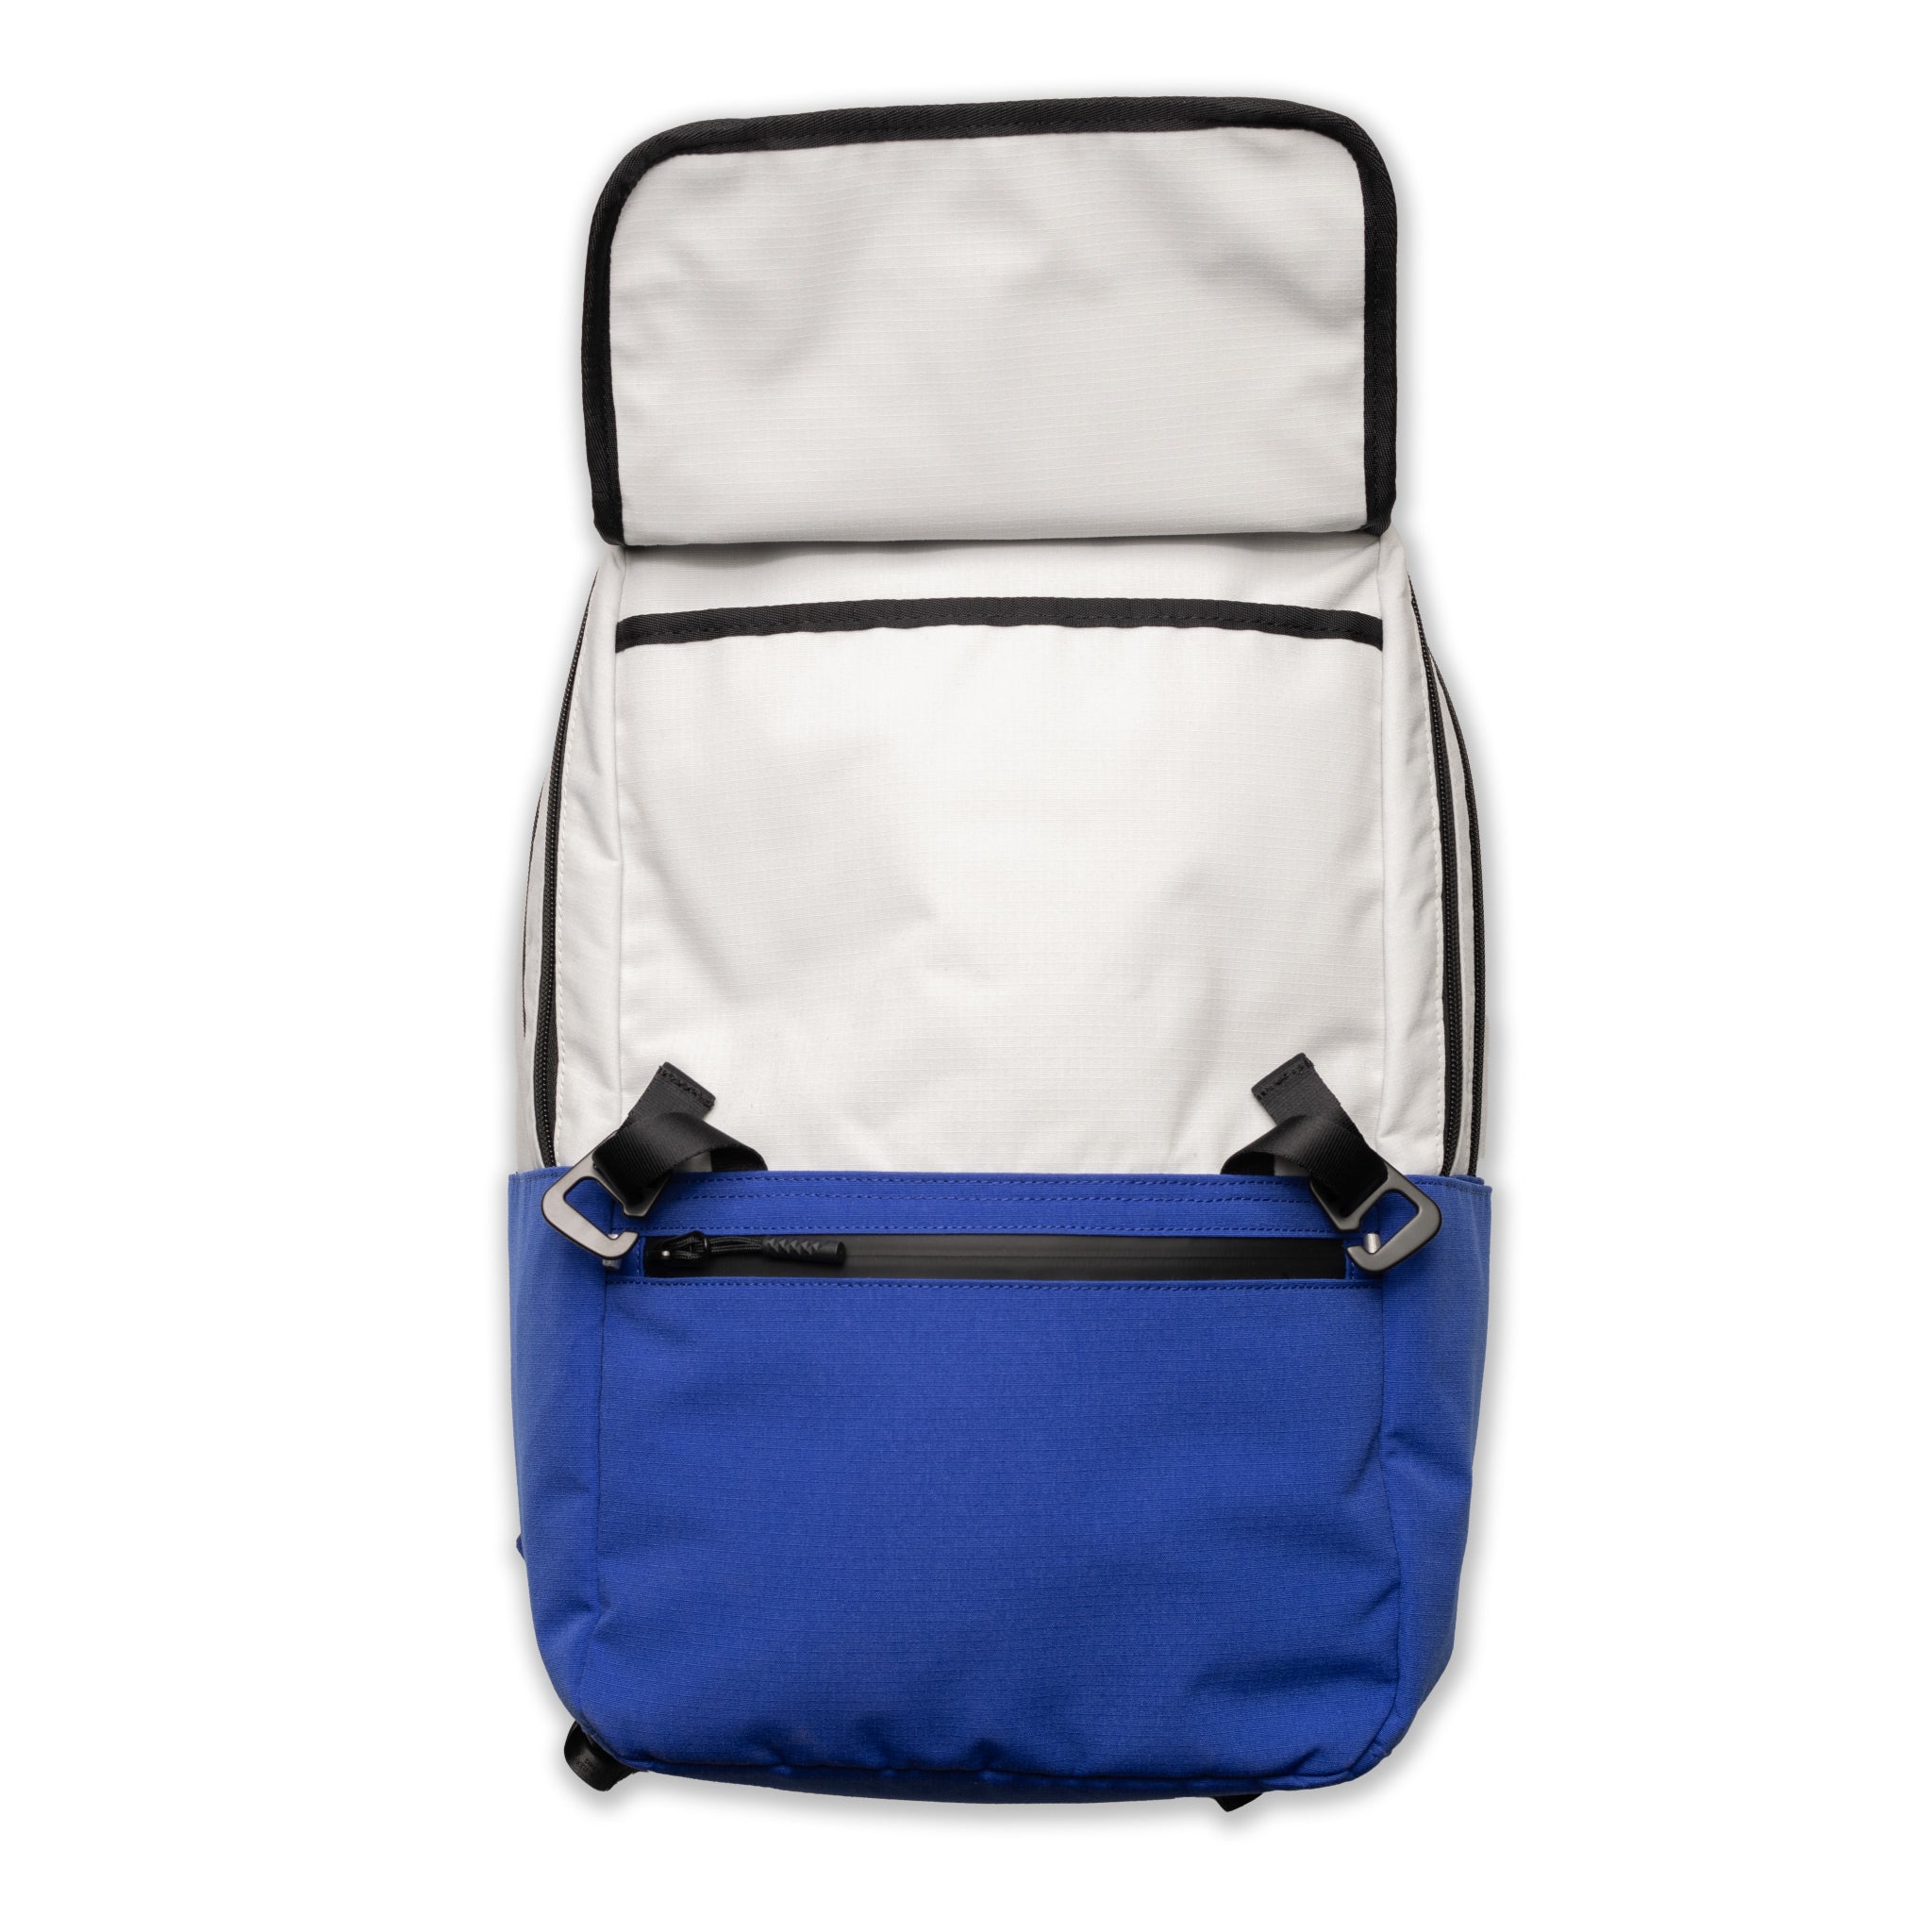 Jones Sports Co. A2 Backpack - Cement/Cobalt Blue